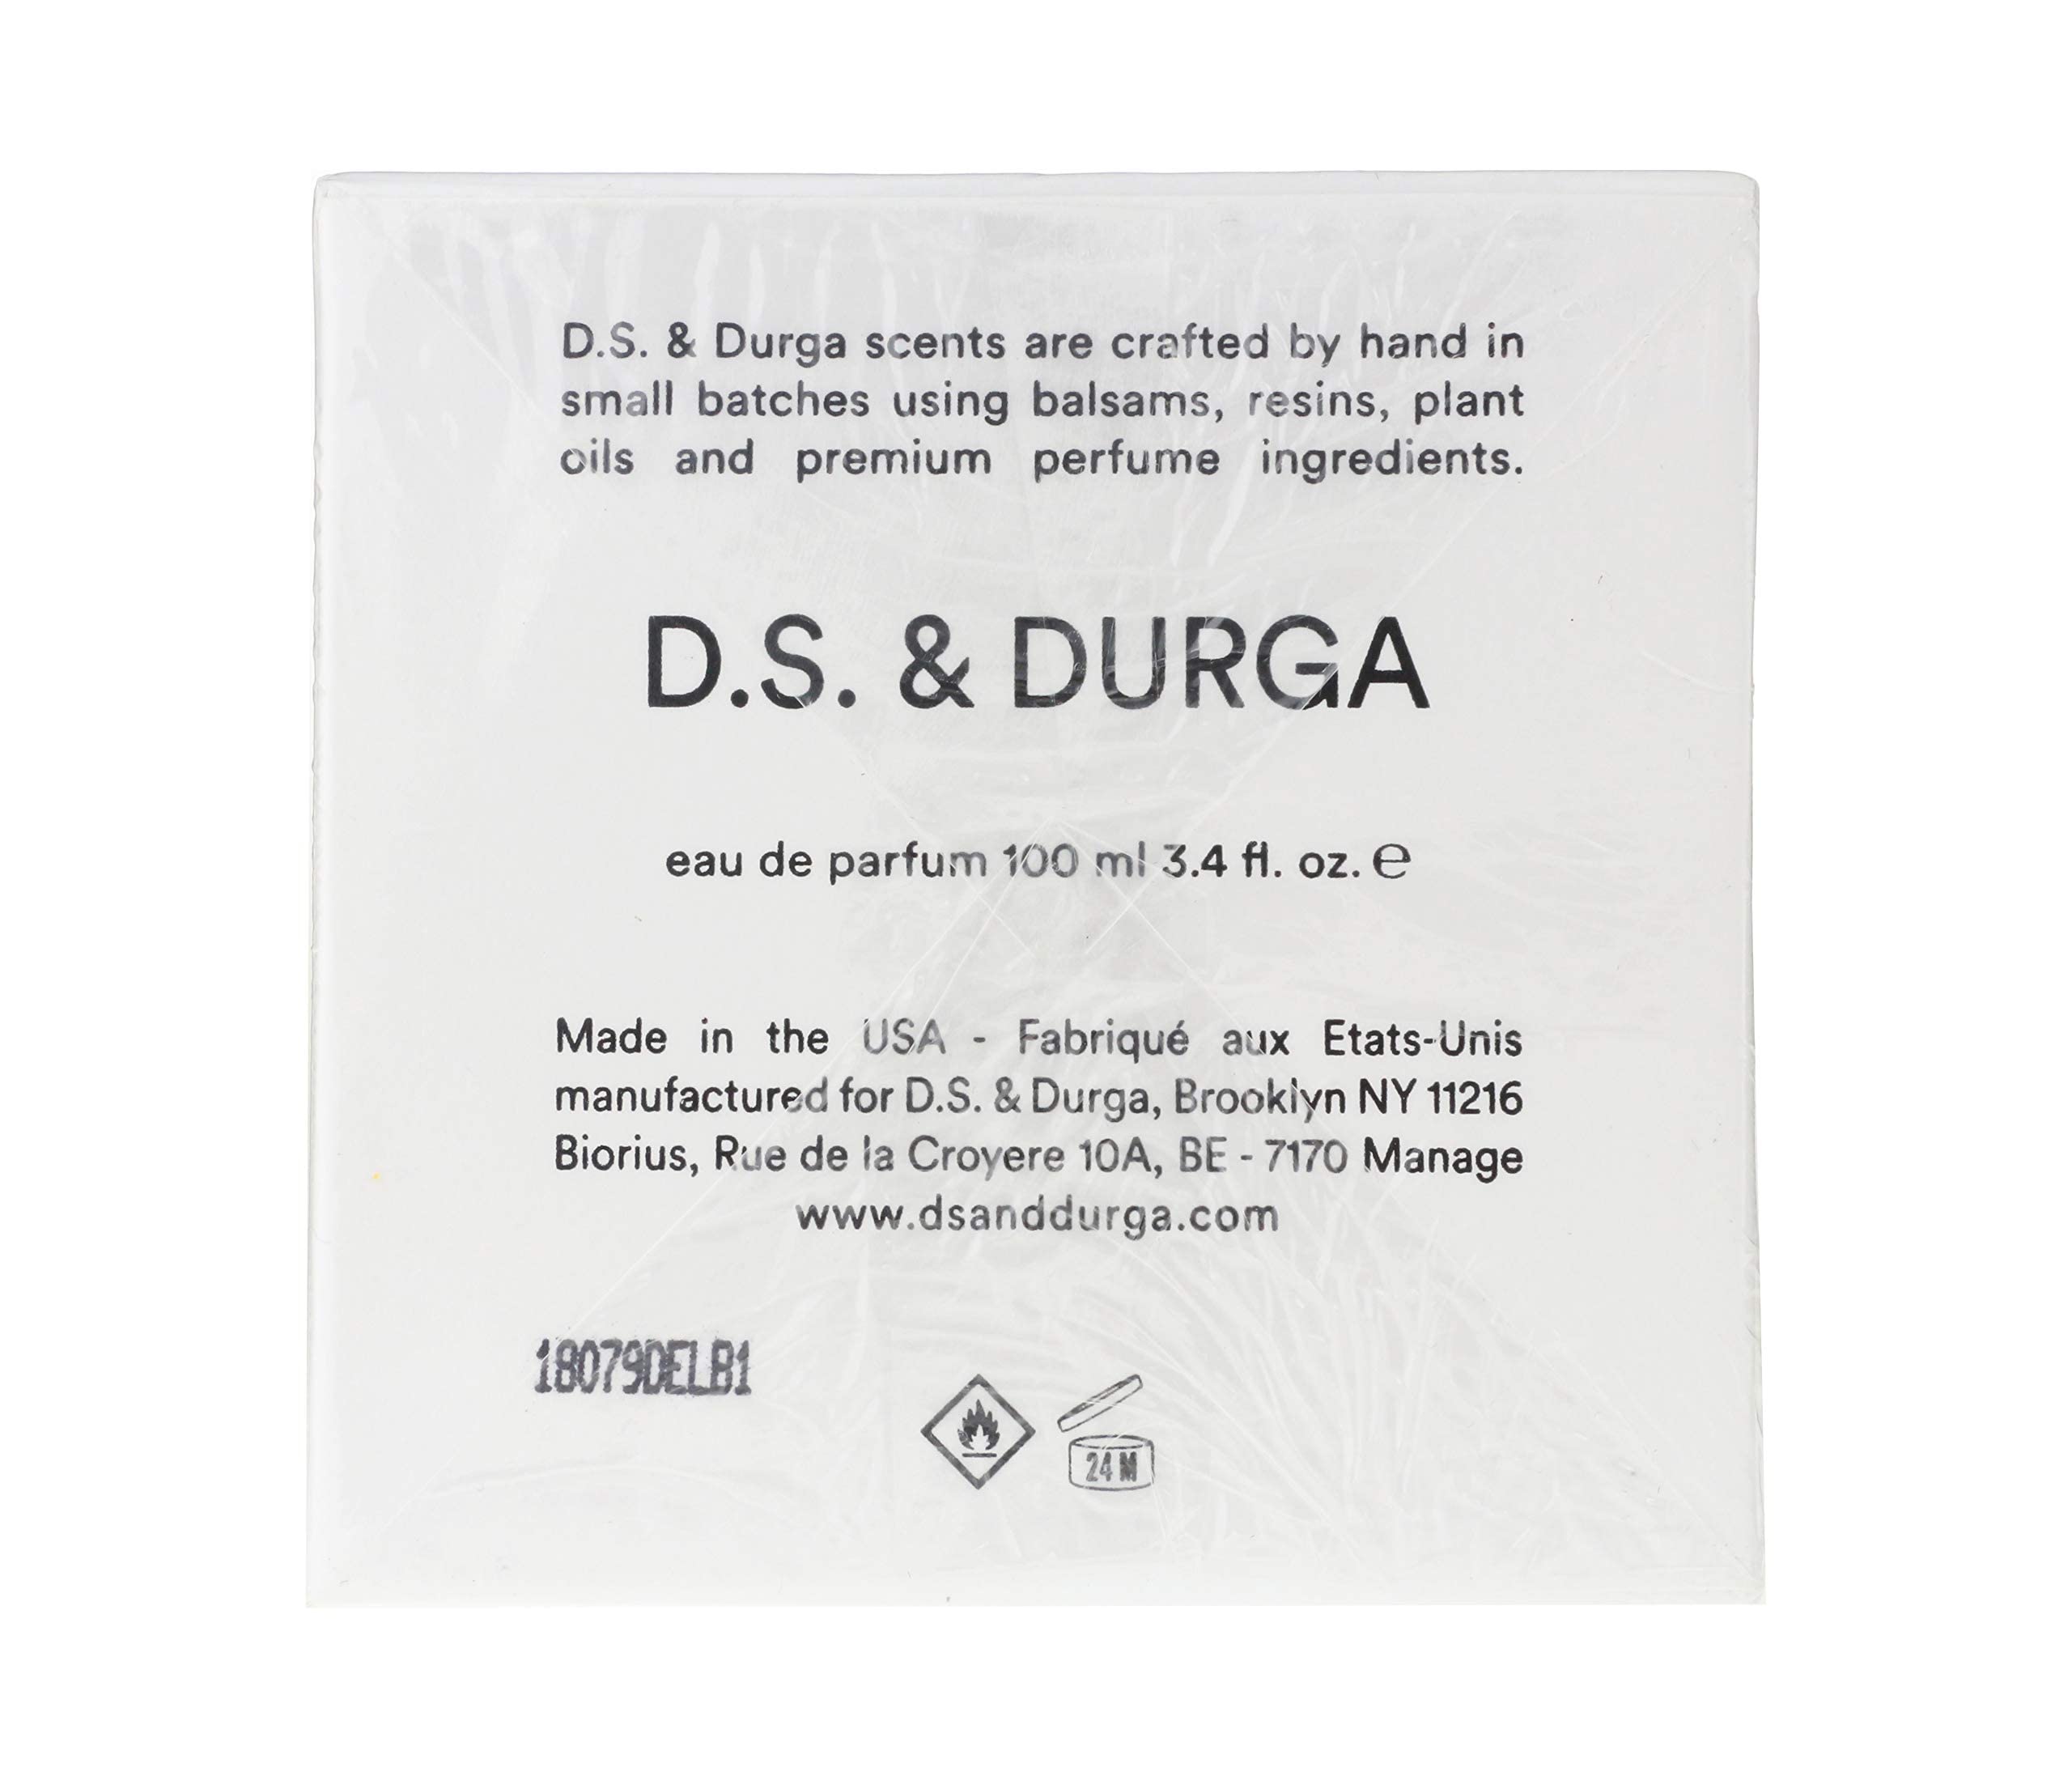 D.S. & Durga Bowmakers for Women Eau de Parfum Spray, 3.4 Ounce (DSDNCU005)